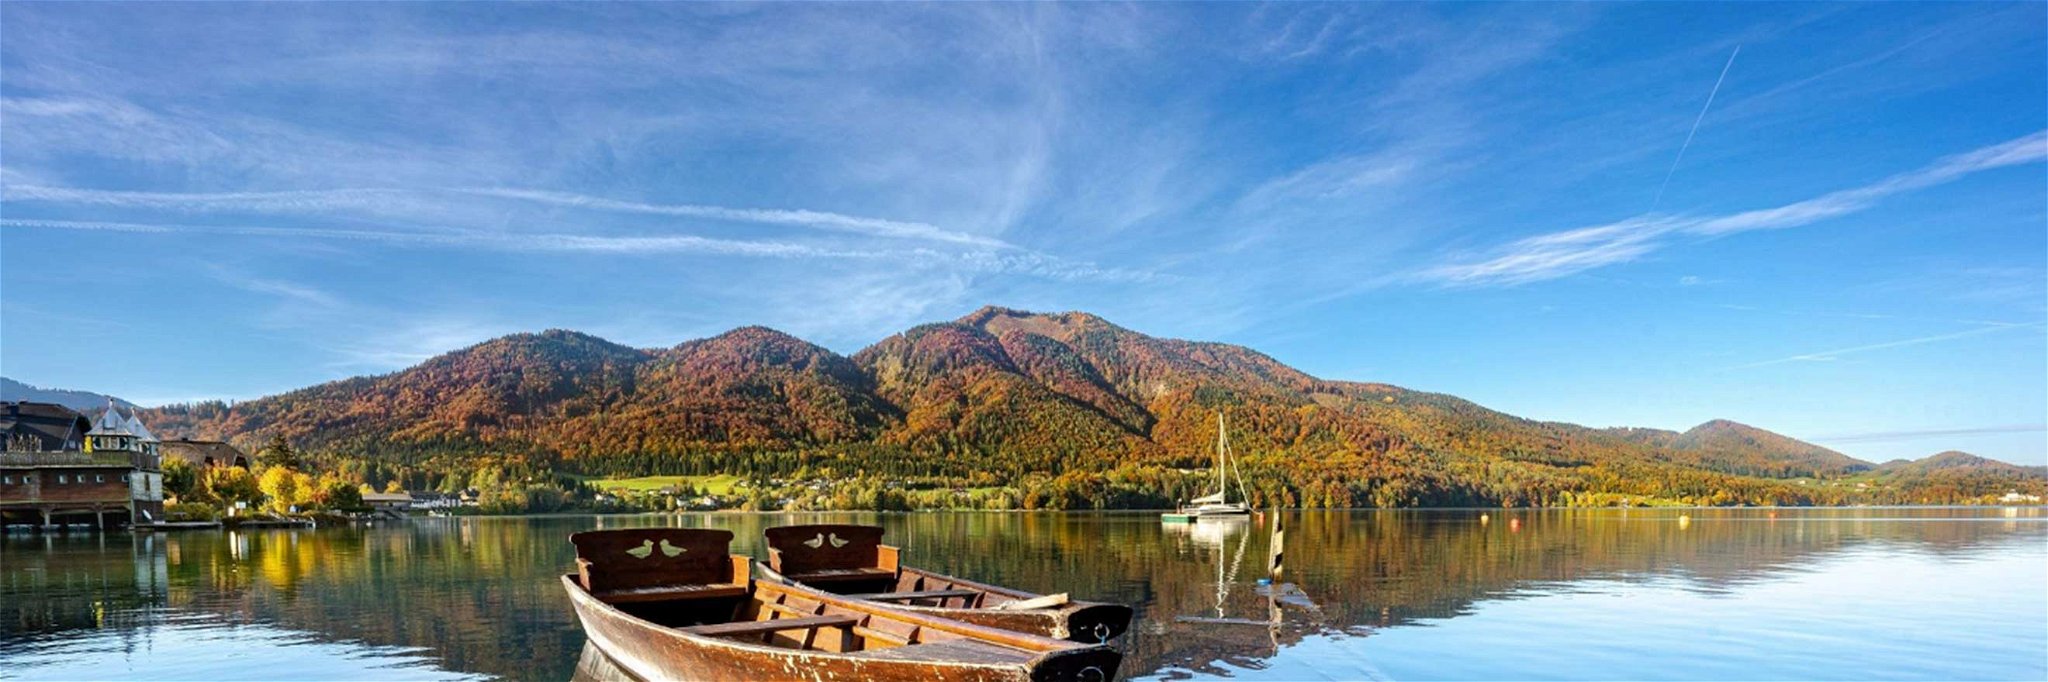 Die heimische Berg-Seen-Landschaft präsentiert sich im Herbst besonders schön.